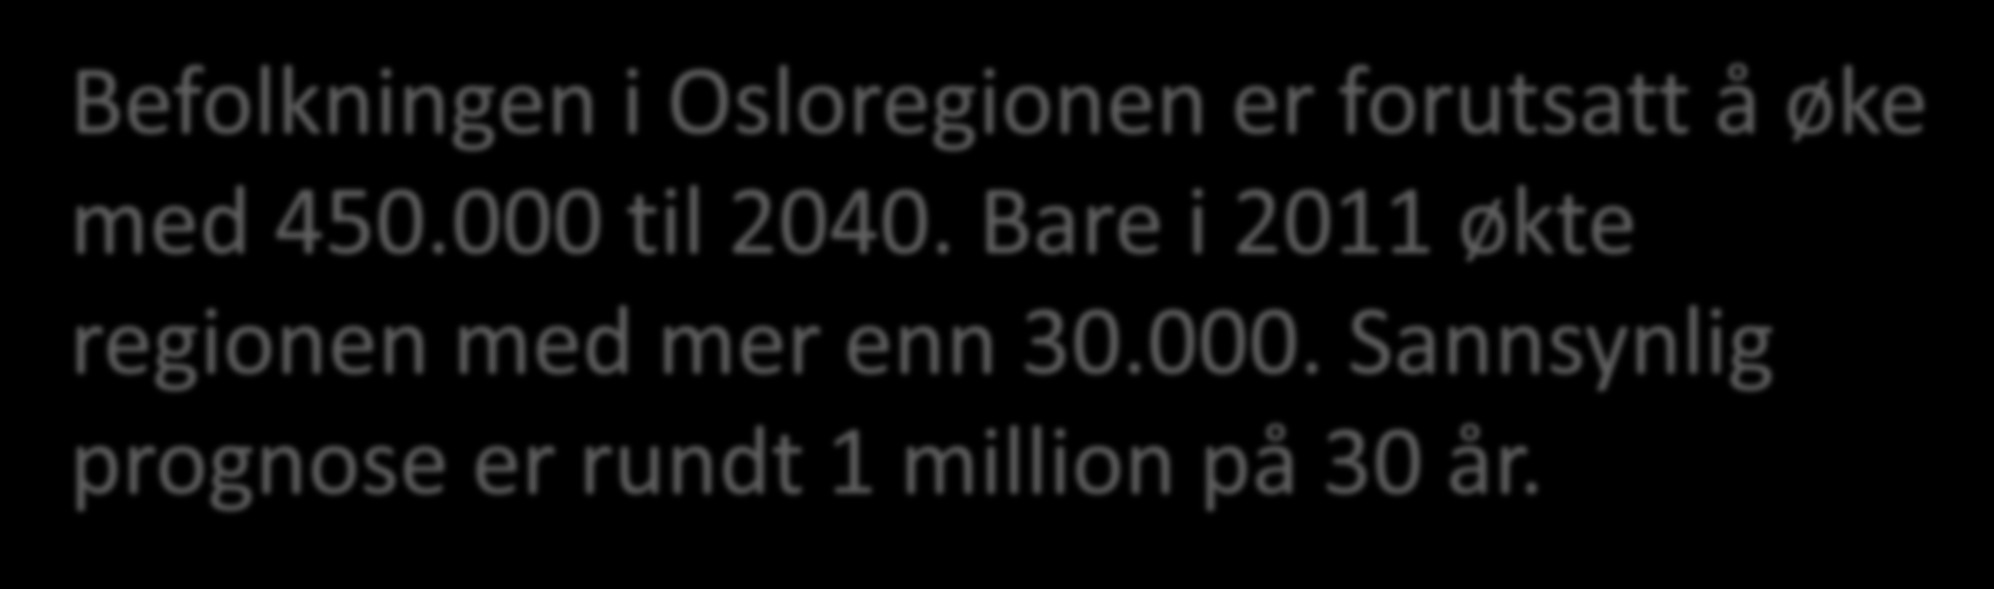 Befolkningen i Osloregionen er forutsatt å øke med 450.000 til 2040. Bare i 2011 økte regionen med mer enn 30.000. Sannsynlig prognose er rundt 1 million på 30 år.